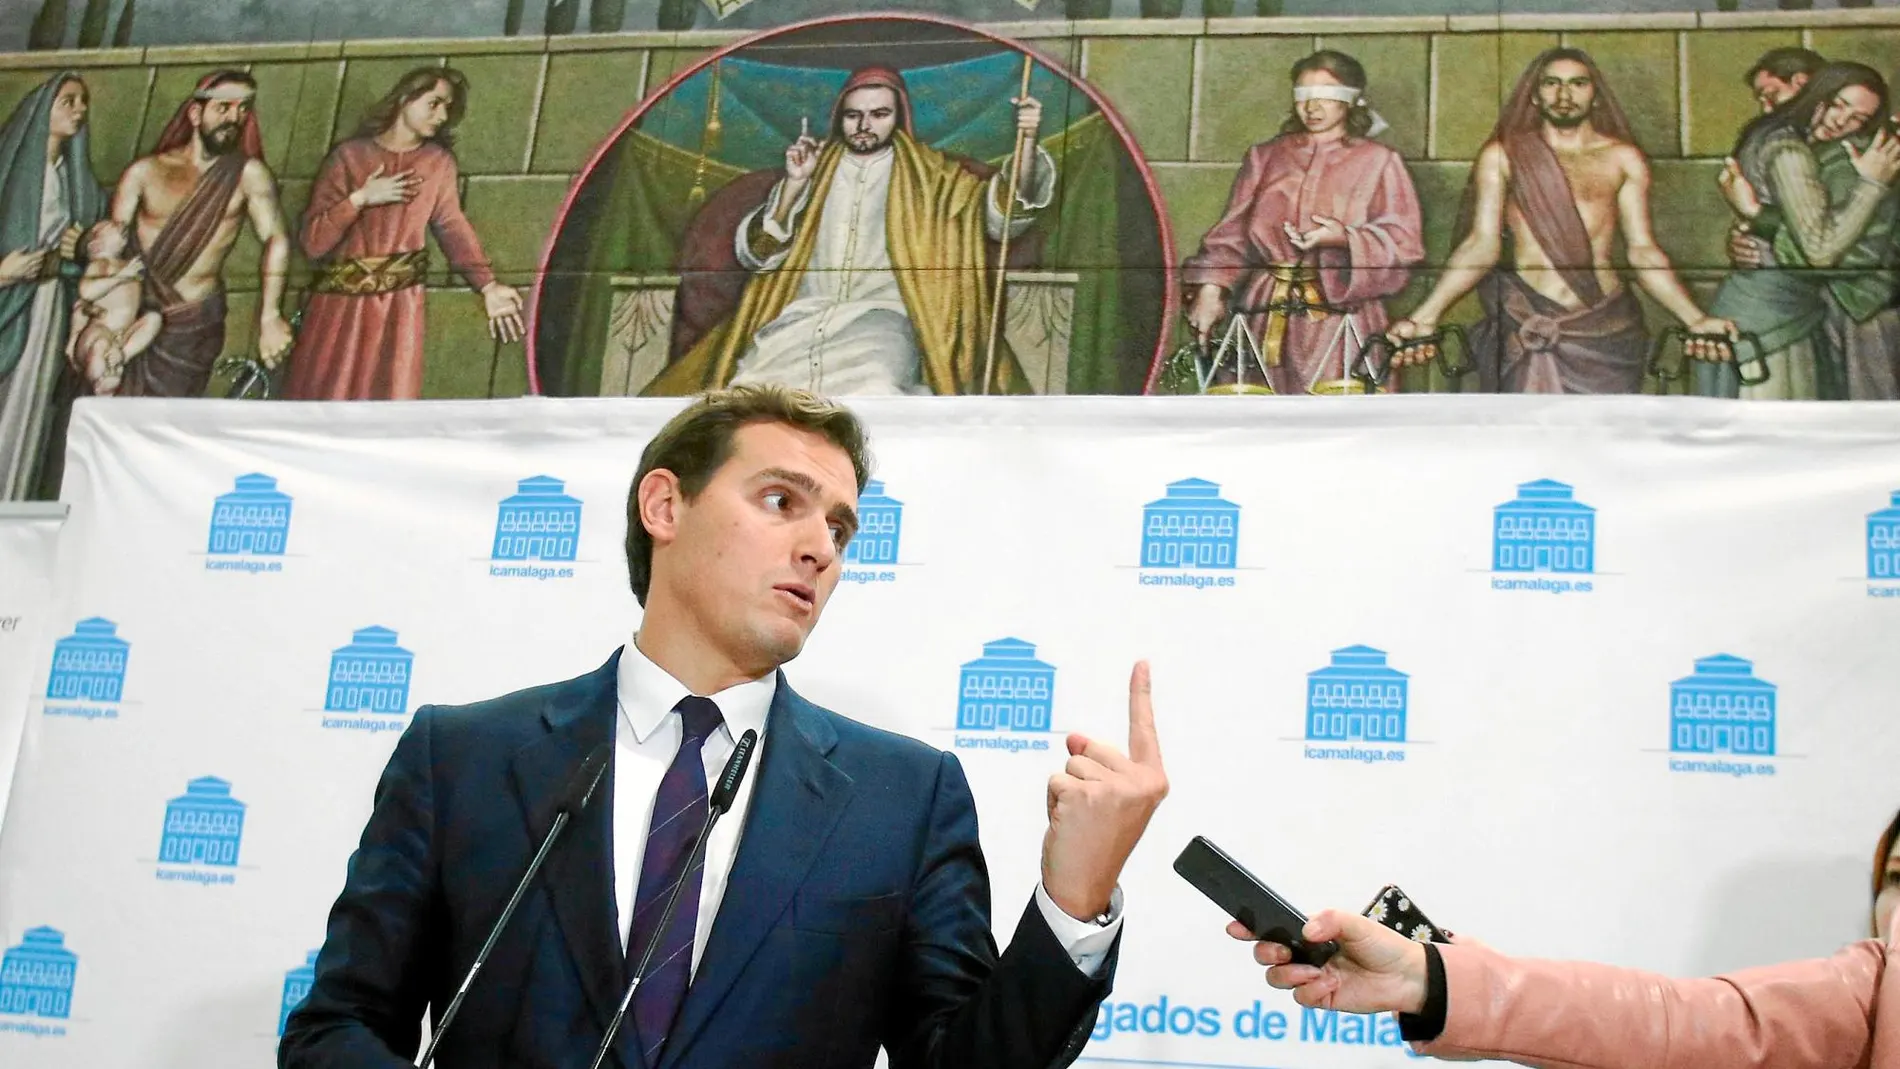 El líder de Ciudadanos recibió ayer un premio de la Asociación Mundial de Juristas en Málaga. Foto: Europa press